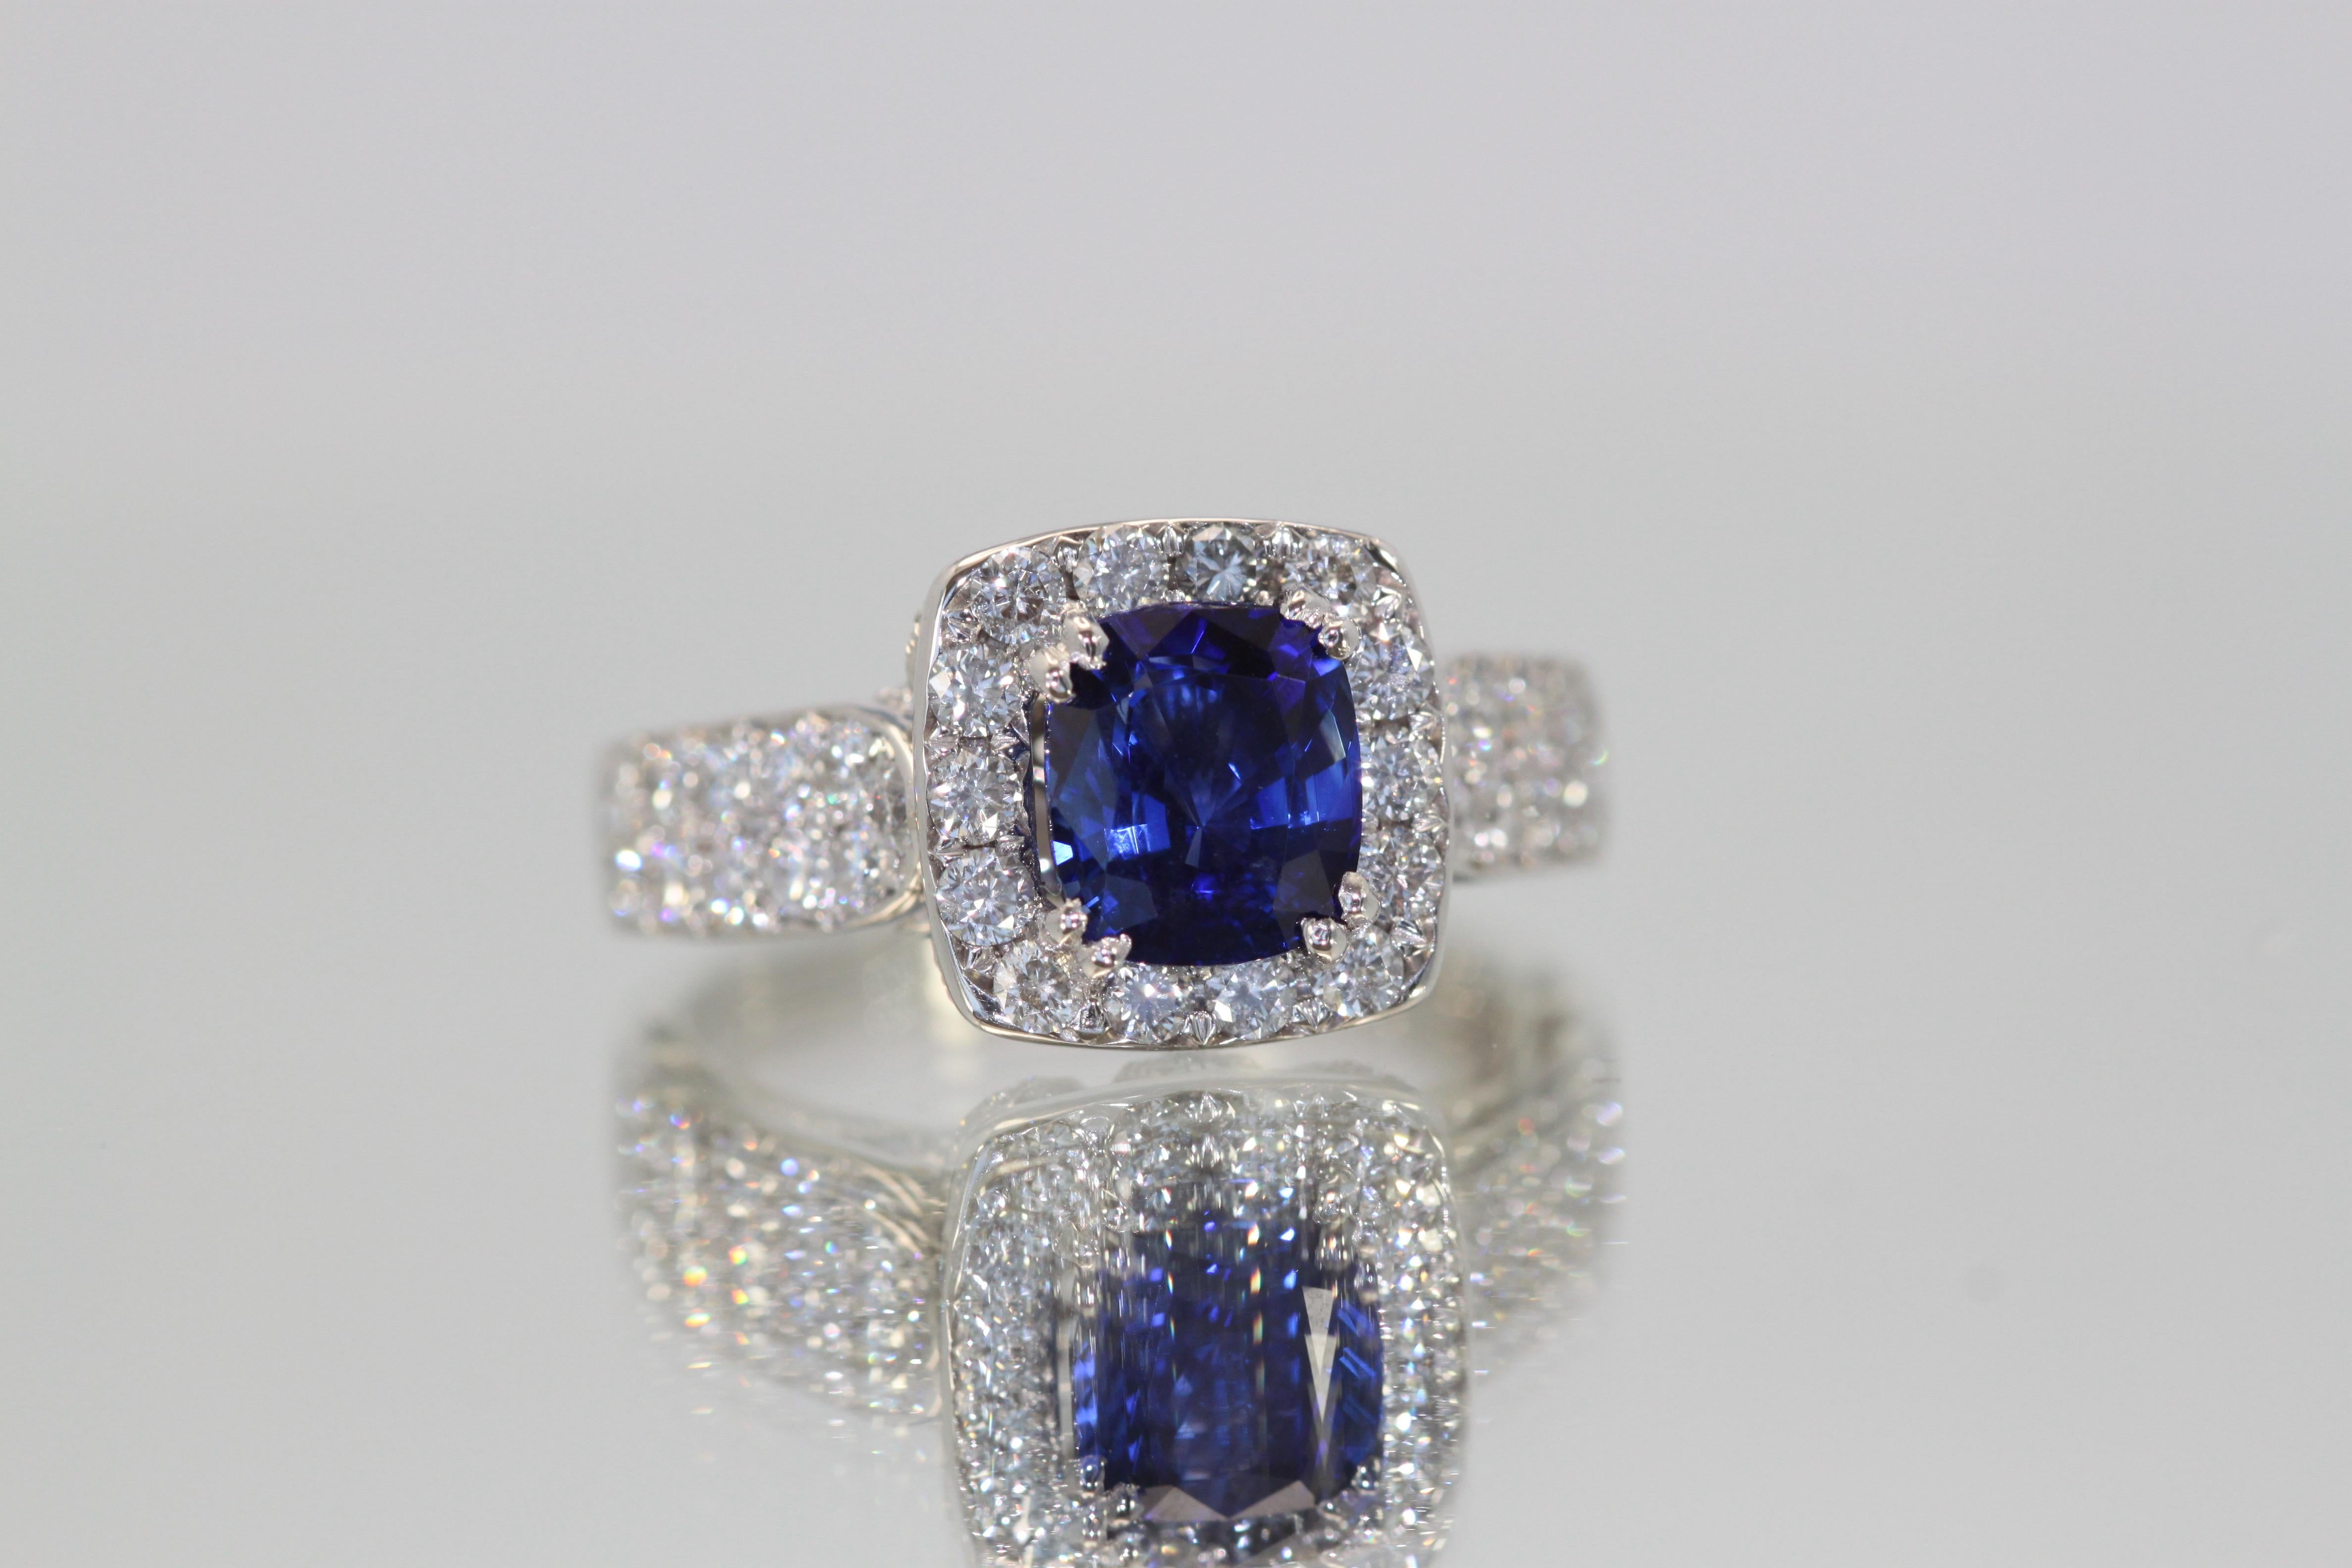 Jeder liebt einen schönen Ring mit einem blauen Saphir.  Dieser ist aus Burma und der Saphir ist mit einem Diamanten umrandet.  Es ist ein wunderschönes tiefes Blau mit herrlichem Funkeln. Die Farbe ist absolut wunderbar, echtes Saphirblau. Der